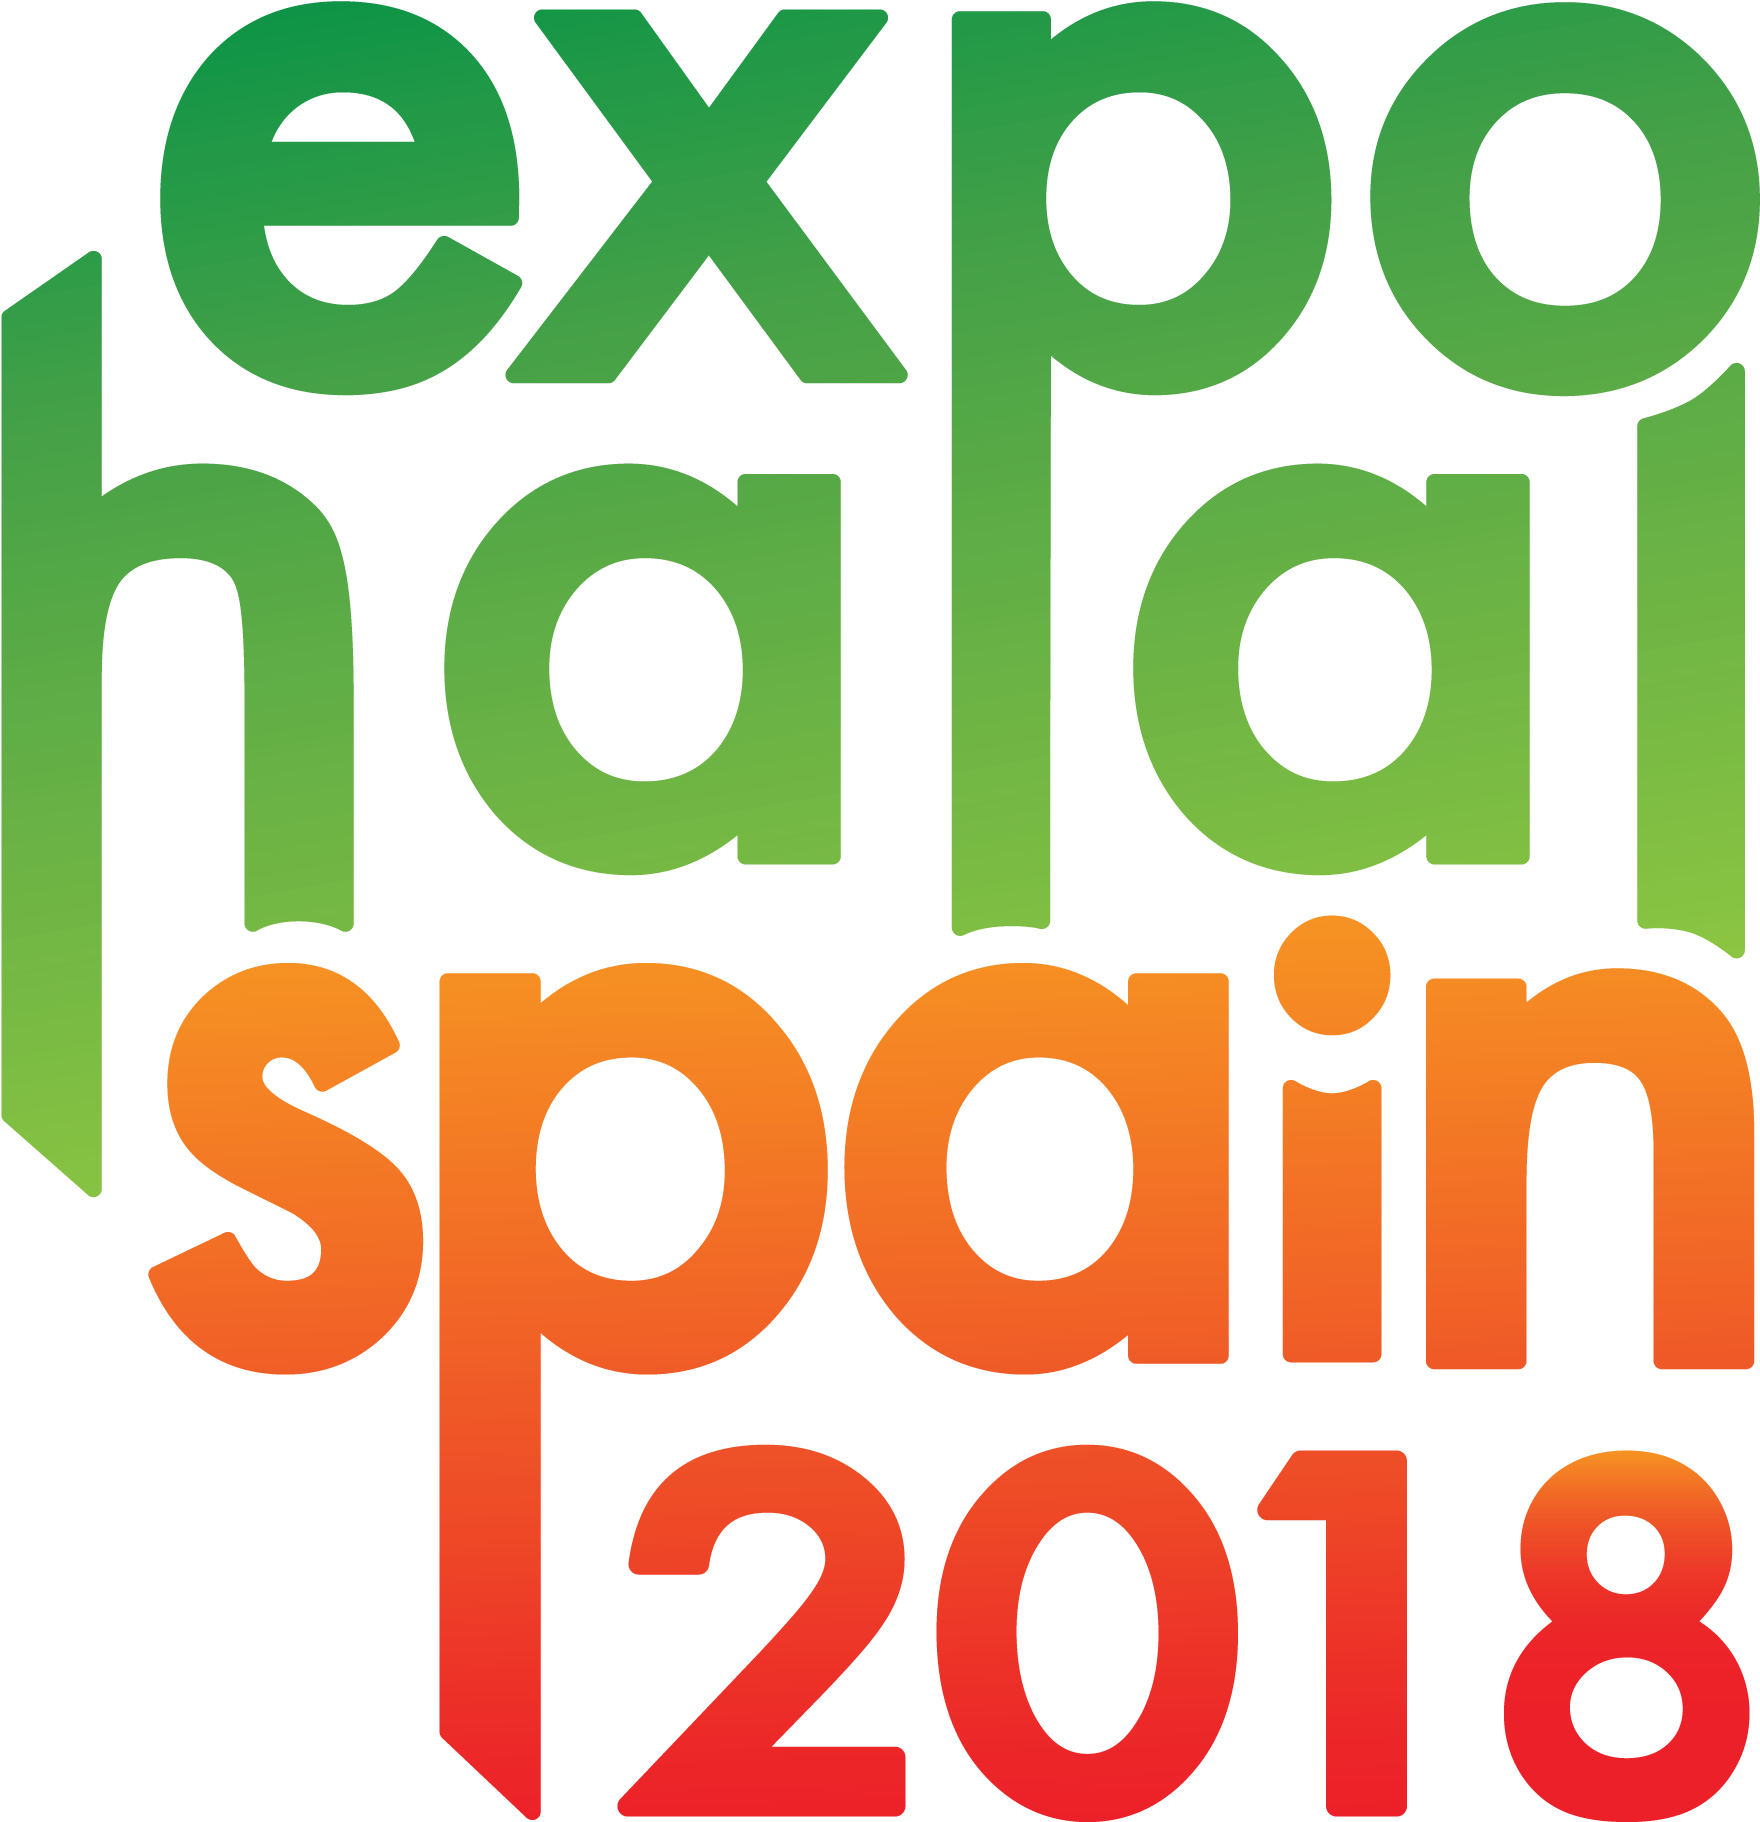 Expohalal Spain - Expo Halal Spain 2018 (2083x2083)